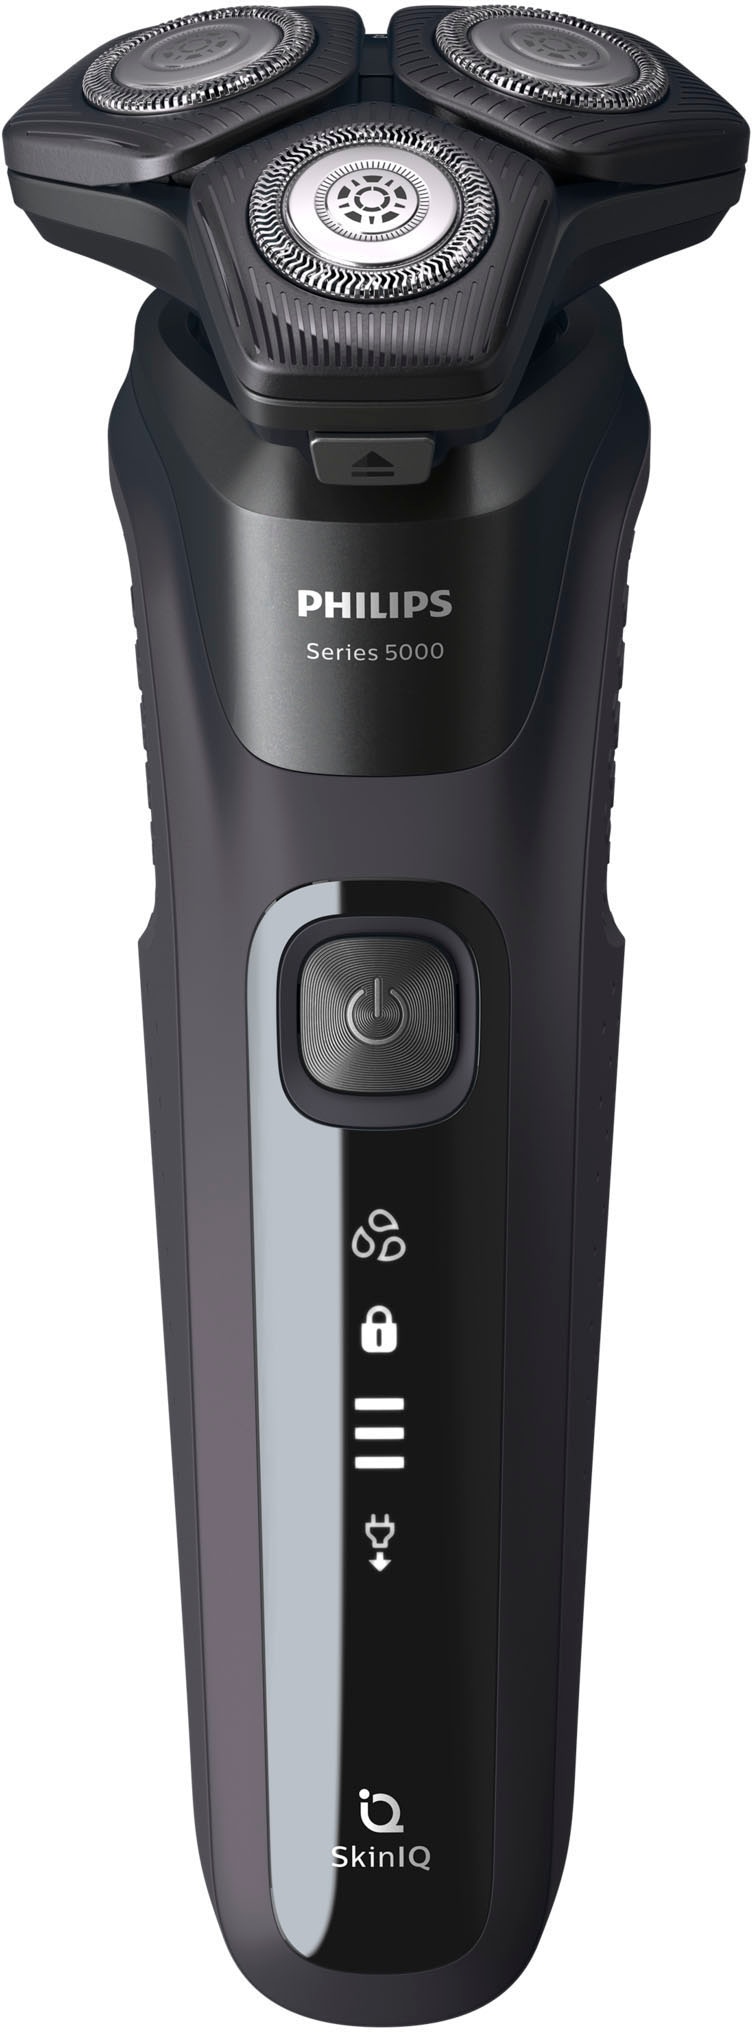 Philips Elektrorasierer »Series 5000 S5588/30«, mit SkinIQ Technologie